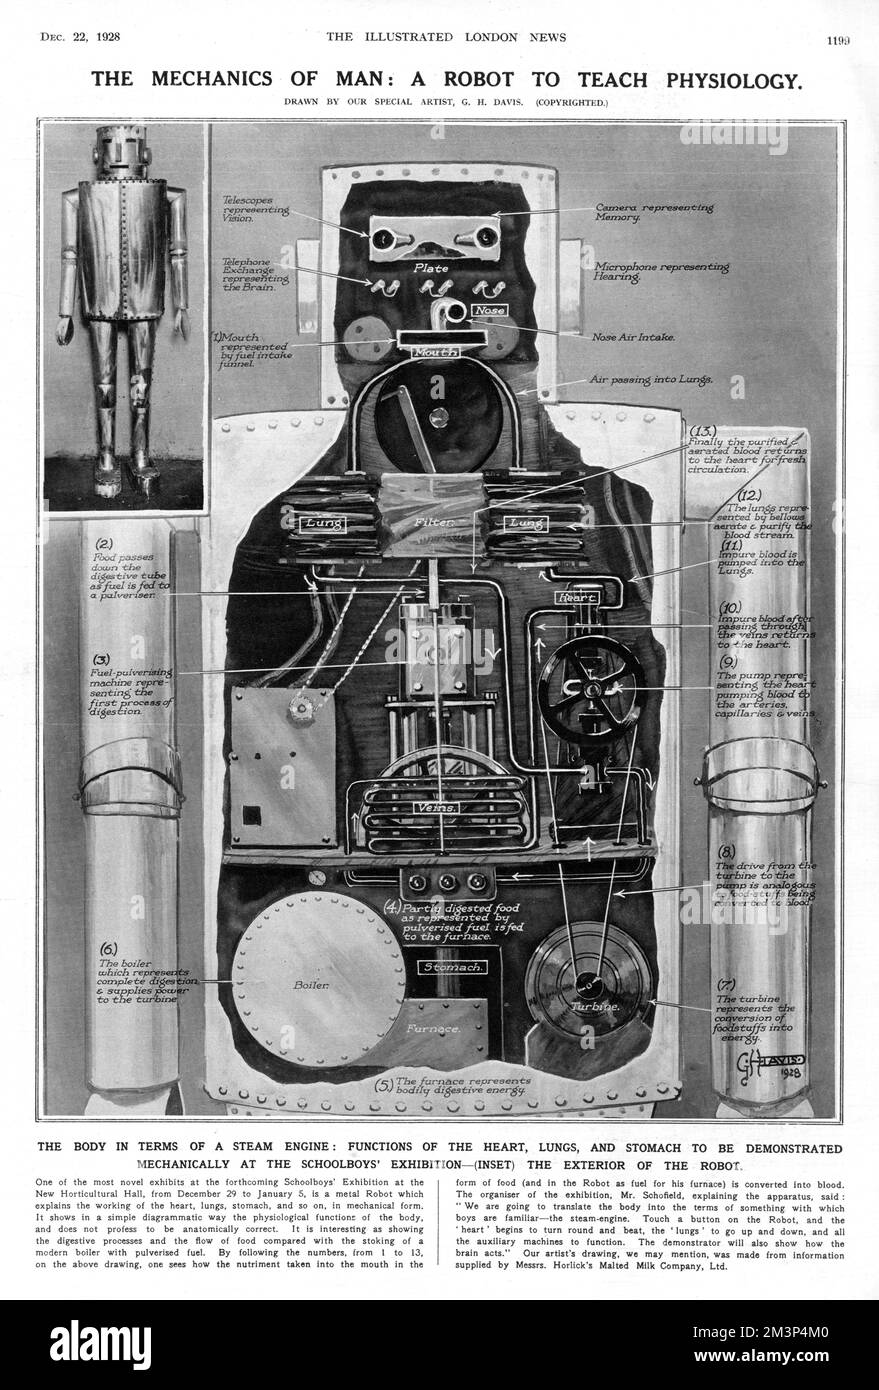 Eine der neuartigen Ausstellungen, die auf der Schuljungen-Ausstellung in der New Horticultural Hall in London im Winter 1928-9 ausgestellt werden; ein Metallroboter, der die Funktionsweise von Herz, Lunge, Magen usw. in mechanischer Form erklärte. Der Organisator der Ausstellung, Herr Schofield, erläuterte den Apparat und sagte: "Wir werden den Körper in Begriffe übersetzen, mit denen die Jungen vertraut sind - die Dampfmaschine." Berühren Sie eine Taste am Roboter, und das „Herz“ beginnt zu schlagen, die „Lunge“ geht nach oben und unten, und alle Hilfsmaschinen funktionieren. Der Roboter war Teil einer Ausstellung von Horlick's Malte Stockfoto